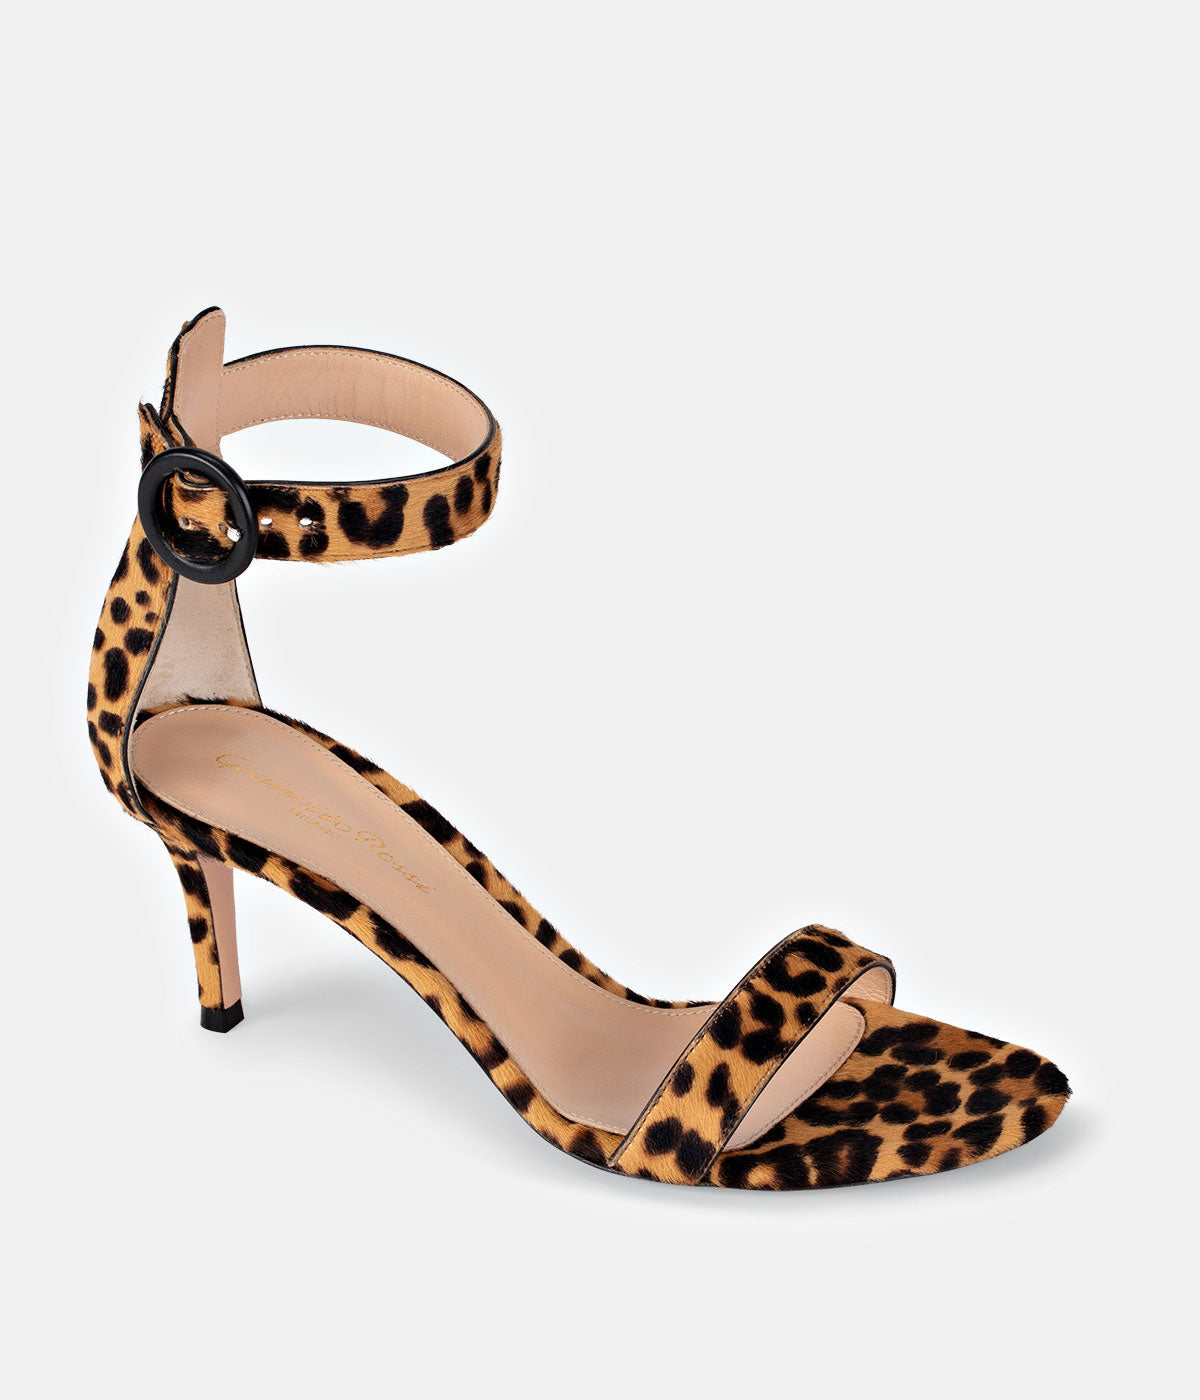 Portofino 70 in Leopard Sandals